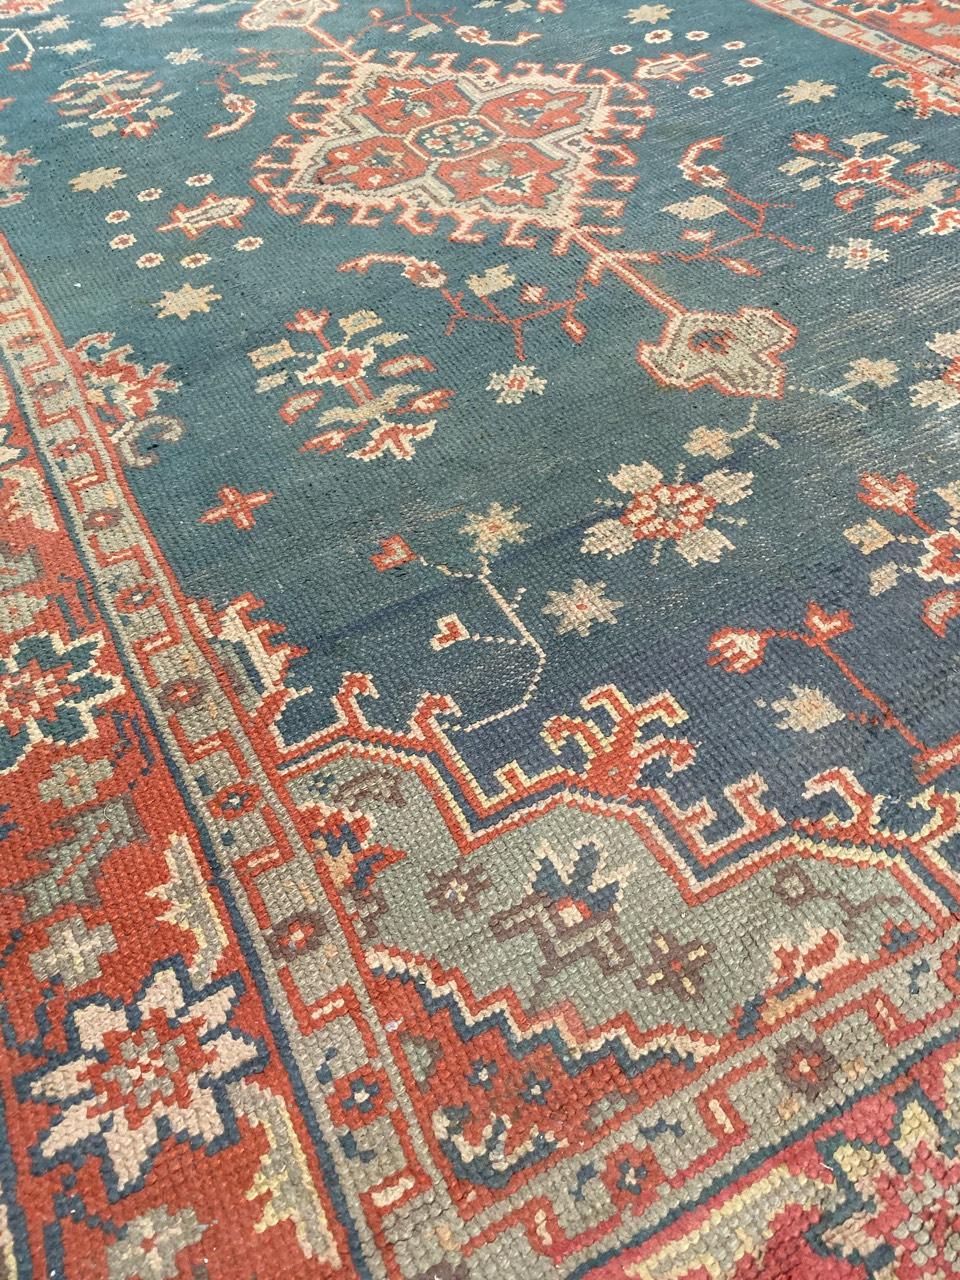 Schöne späten 19. Jahrhundert europäischen Teppich mit schönen türkischen Oushak Design eine schöne Farbe mit blauen Feld und orange und grünen Farben. Vollständig handgeknüpft mit Wollsamt auf Baumwollgrund.